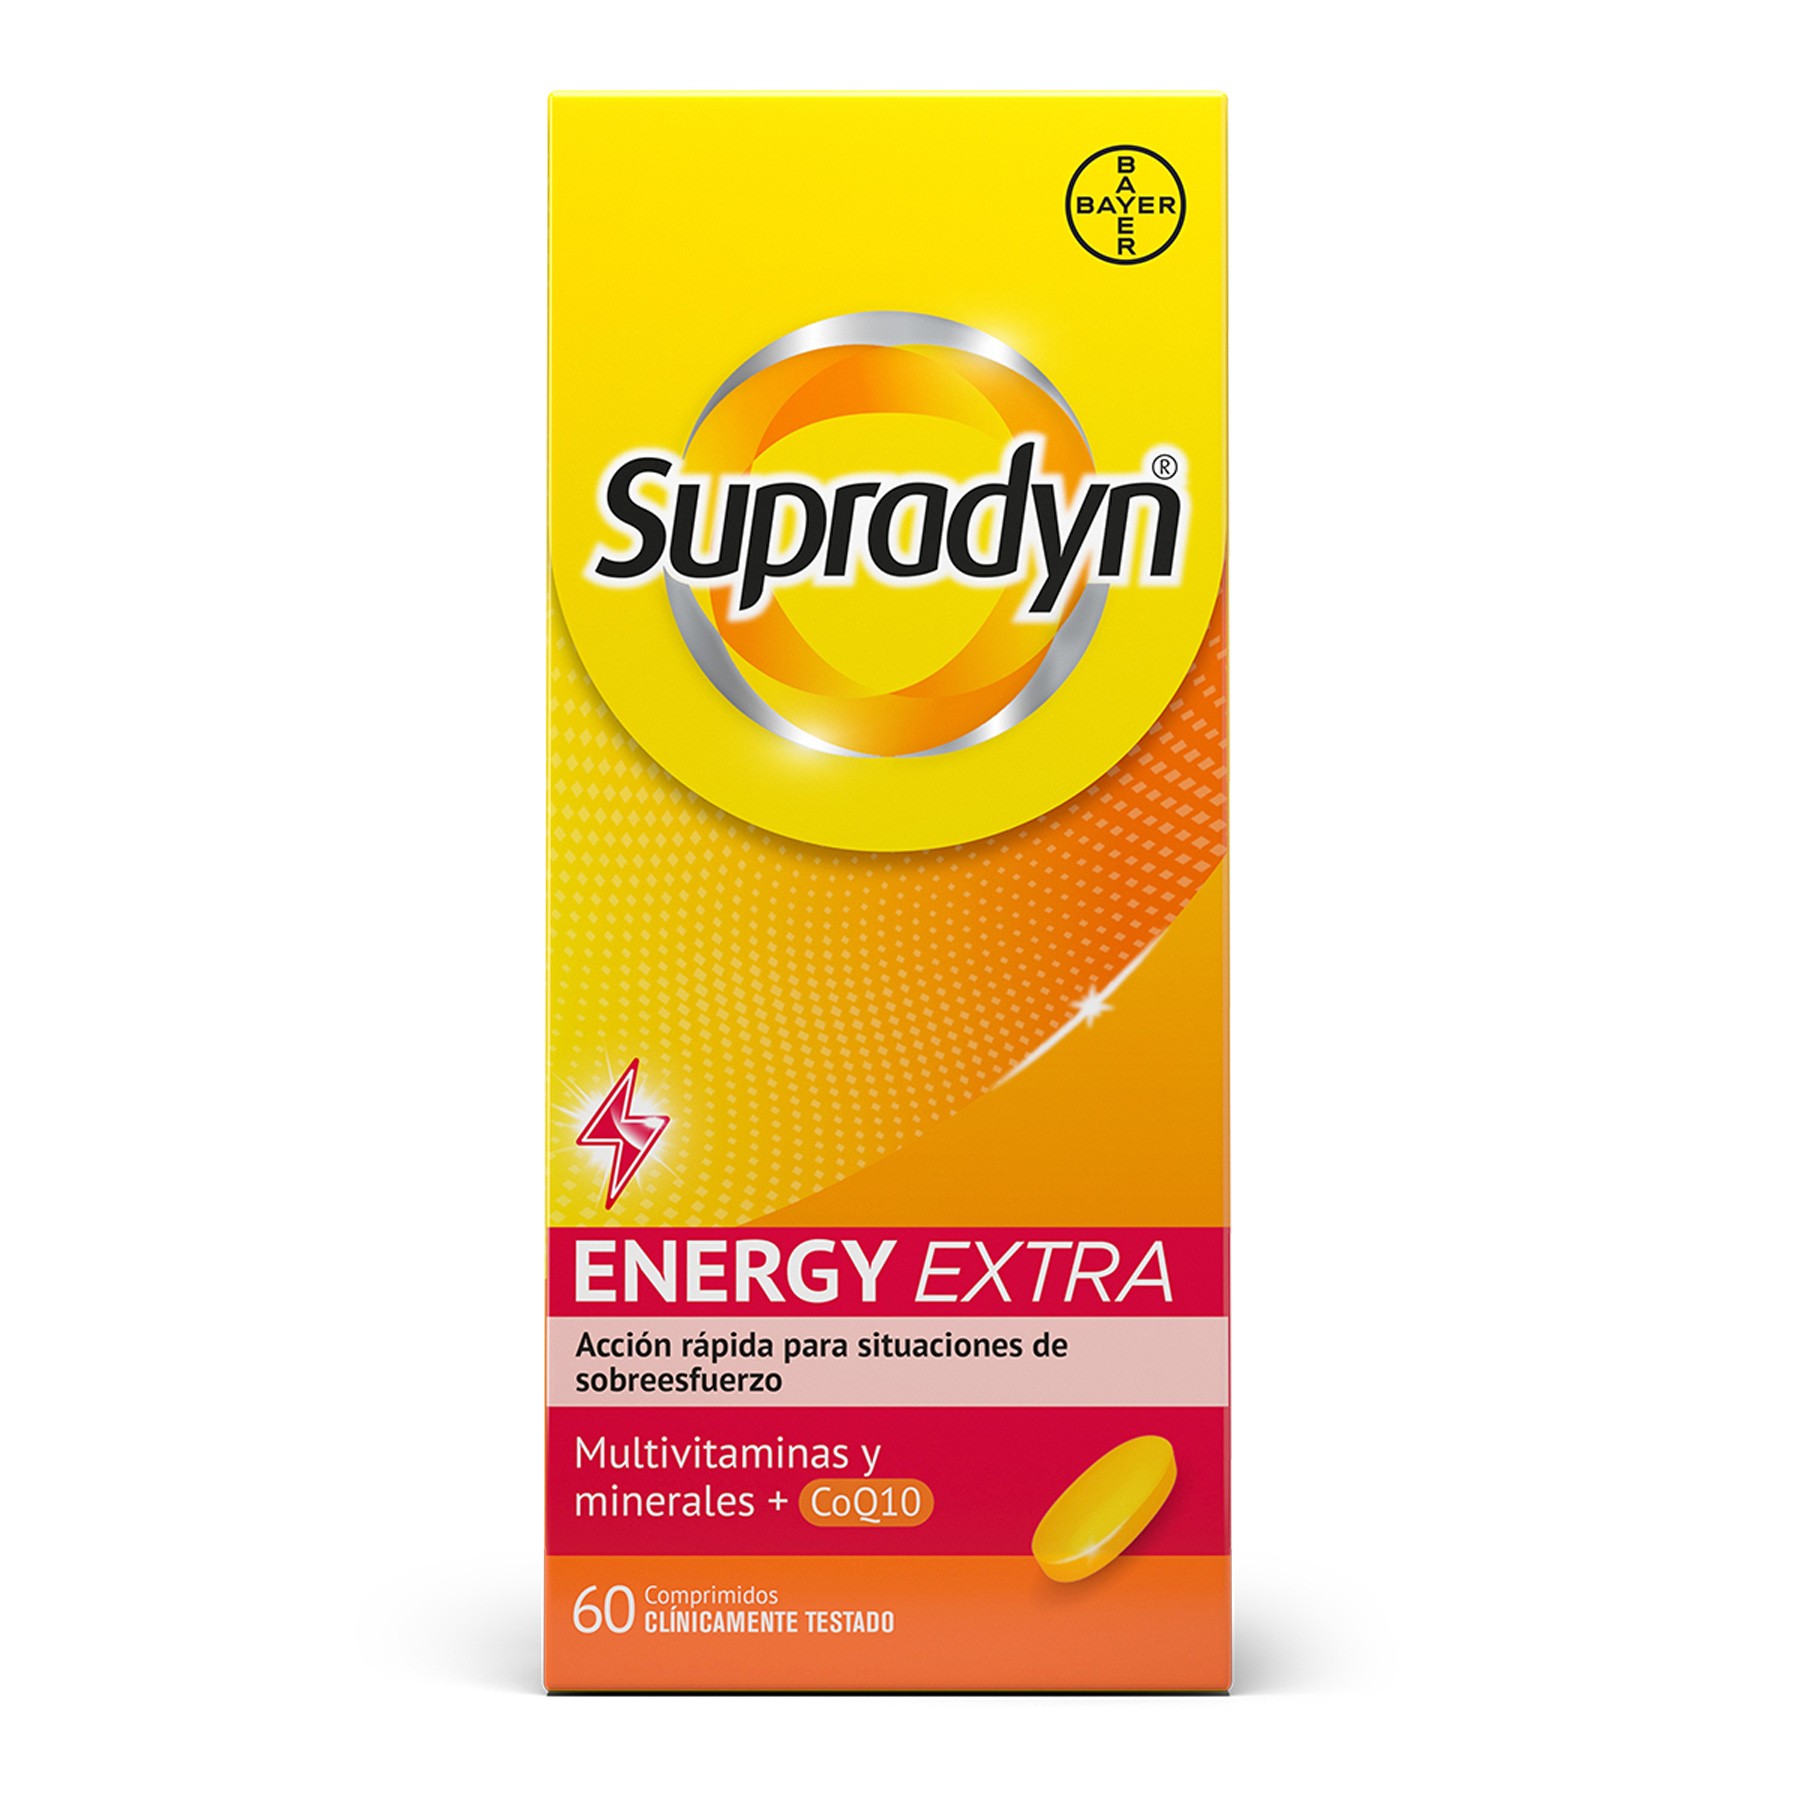 Supradyn energy extra 60 comprimidos
